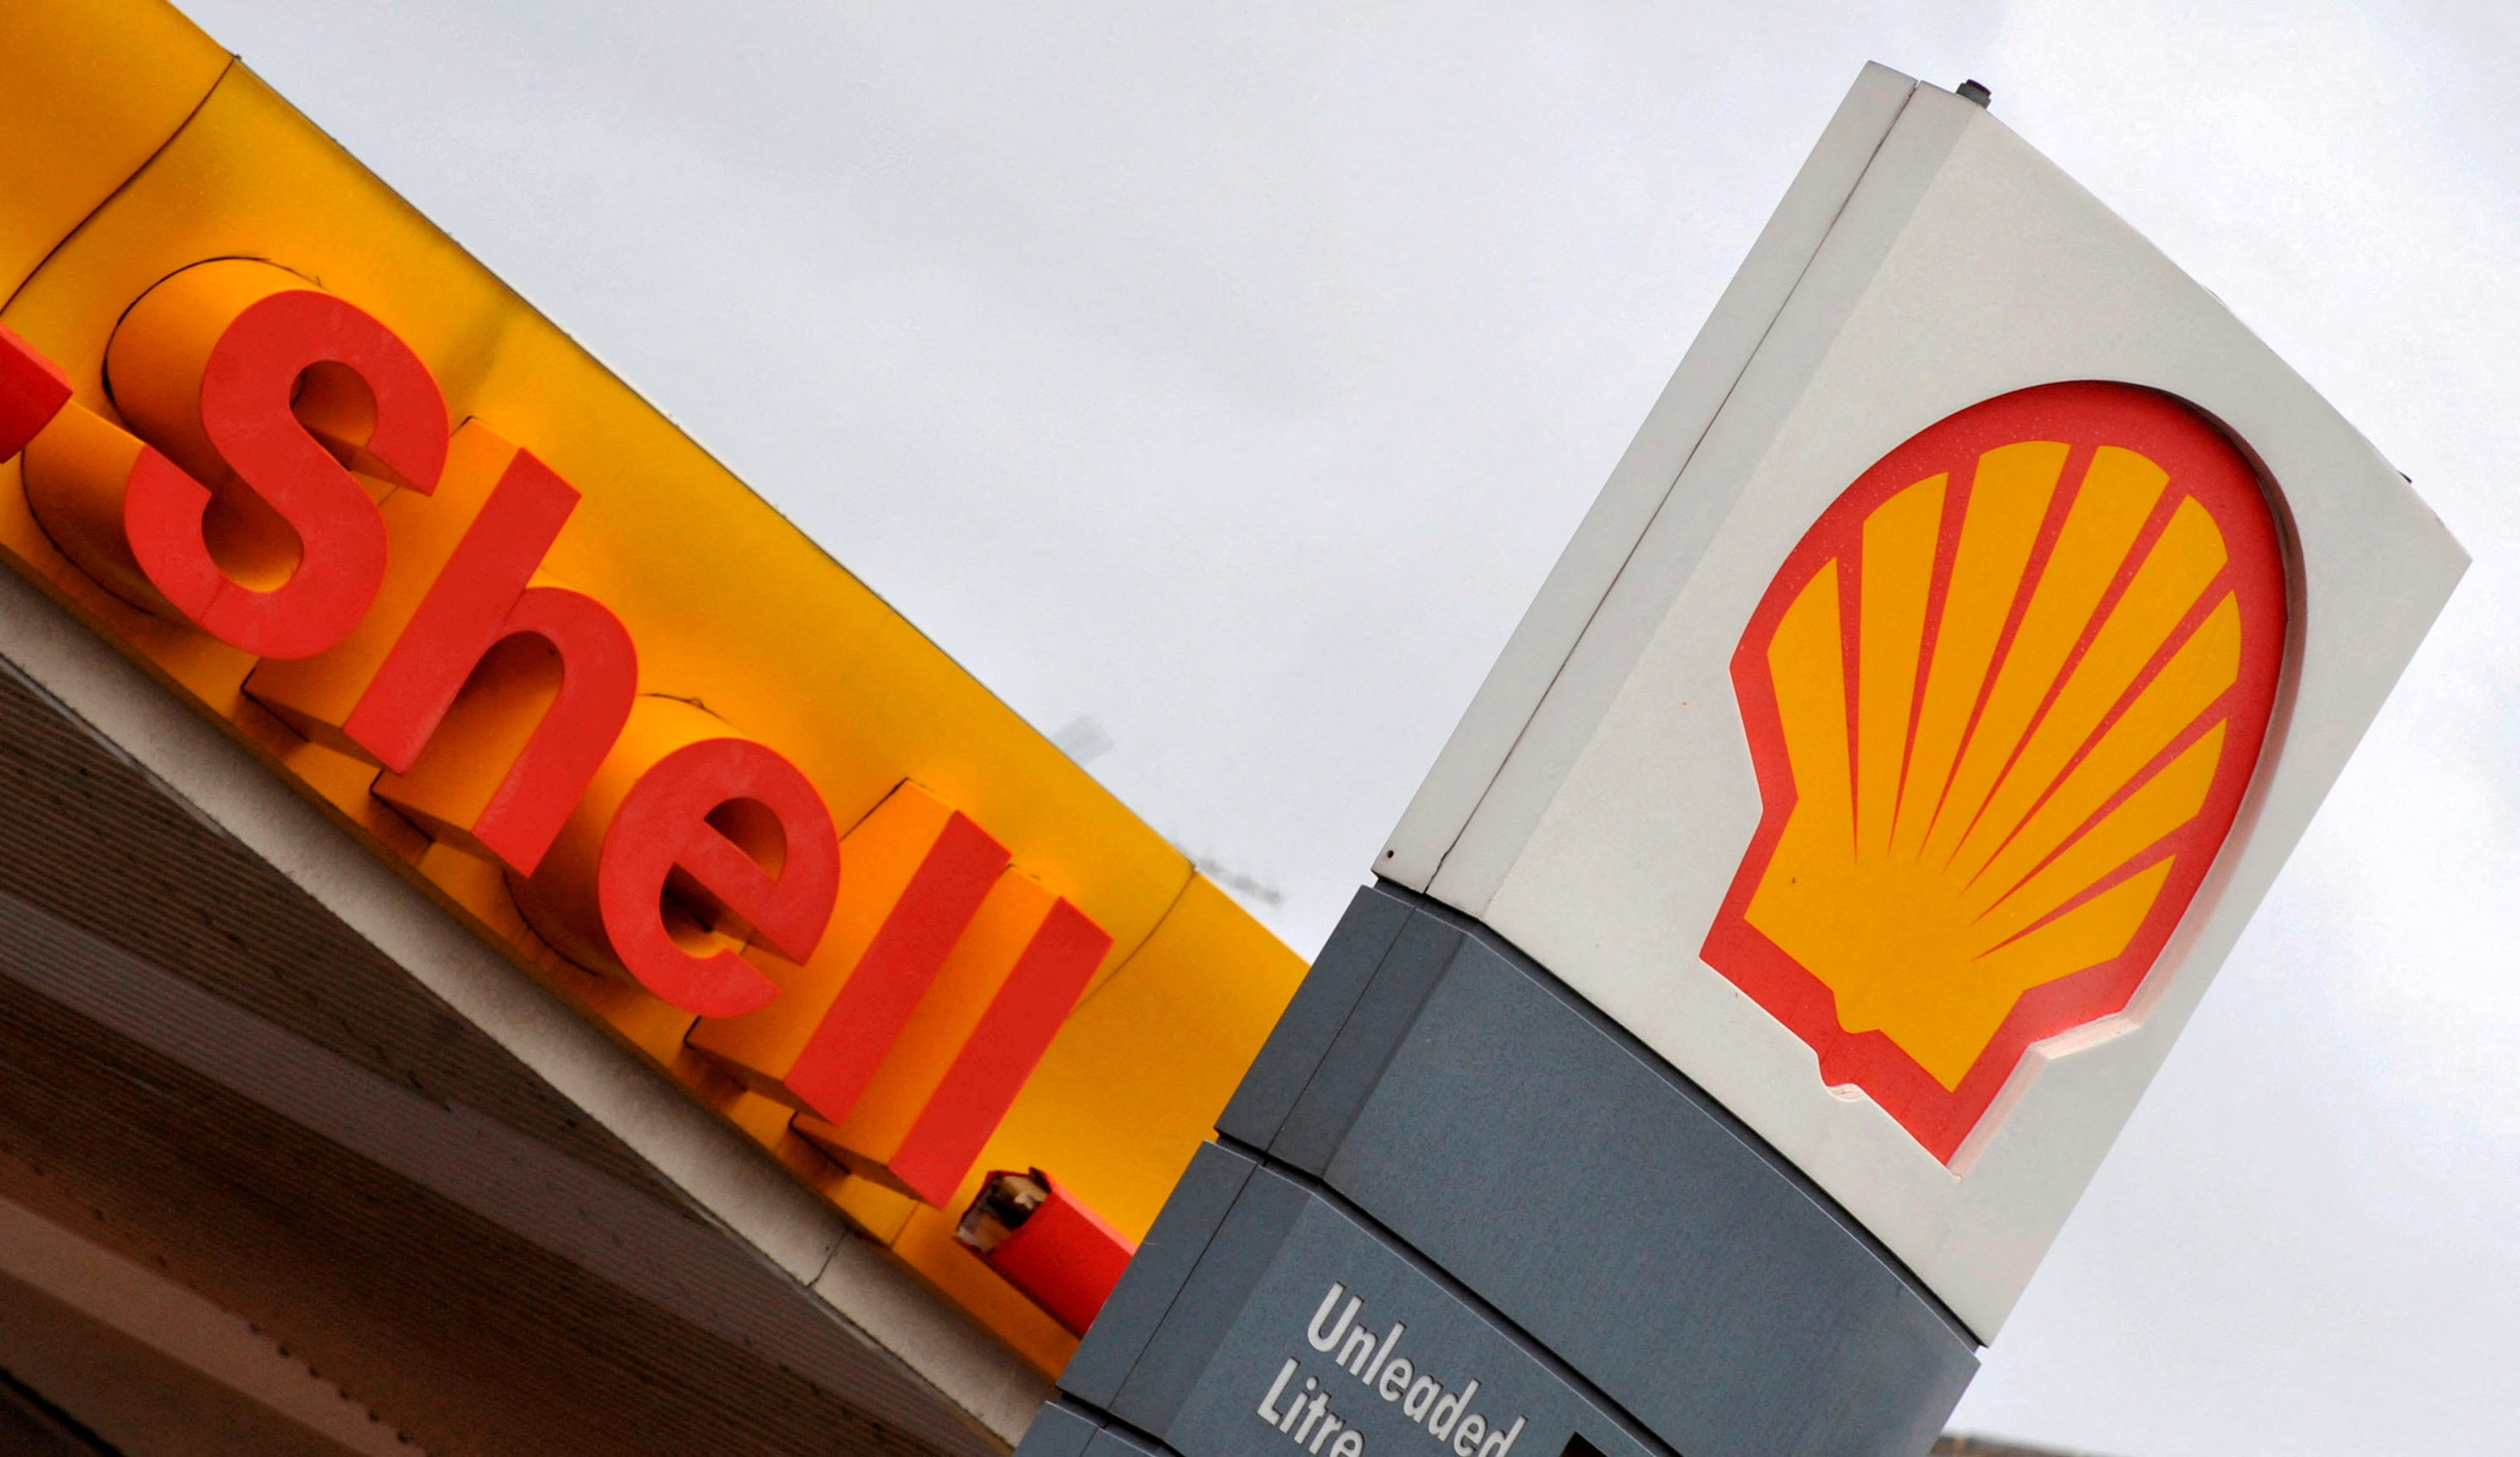 Climat : Shell, TotalEnergies, Suez... de grands groupes échappent aux poursuites malgré les plaintes